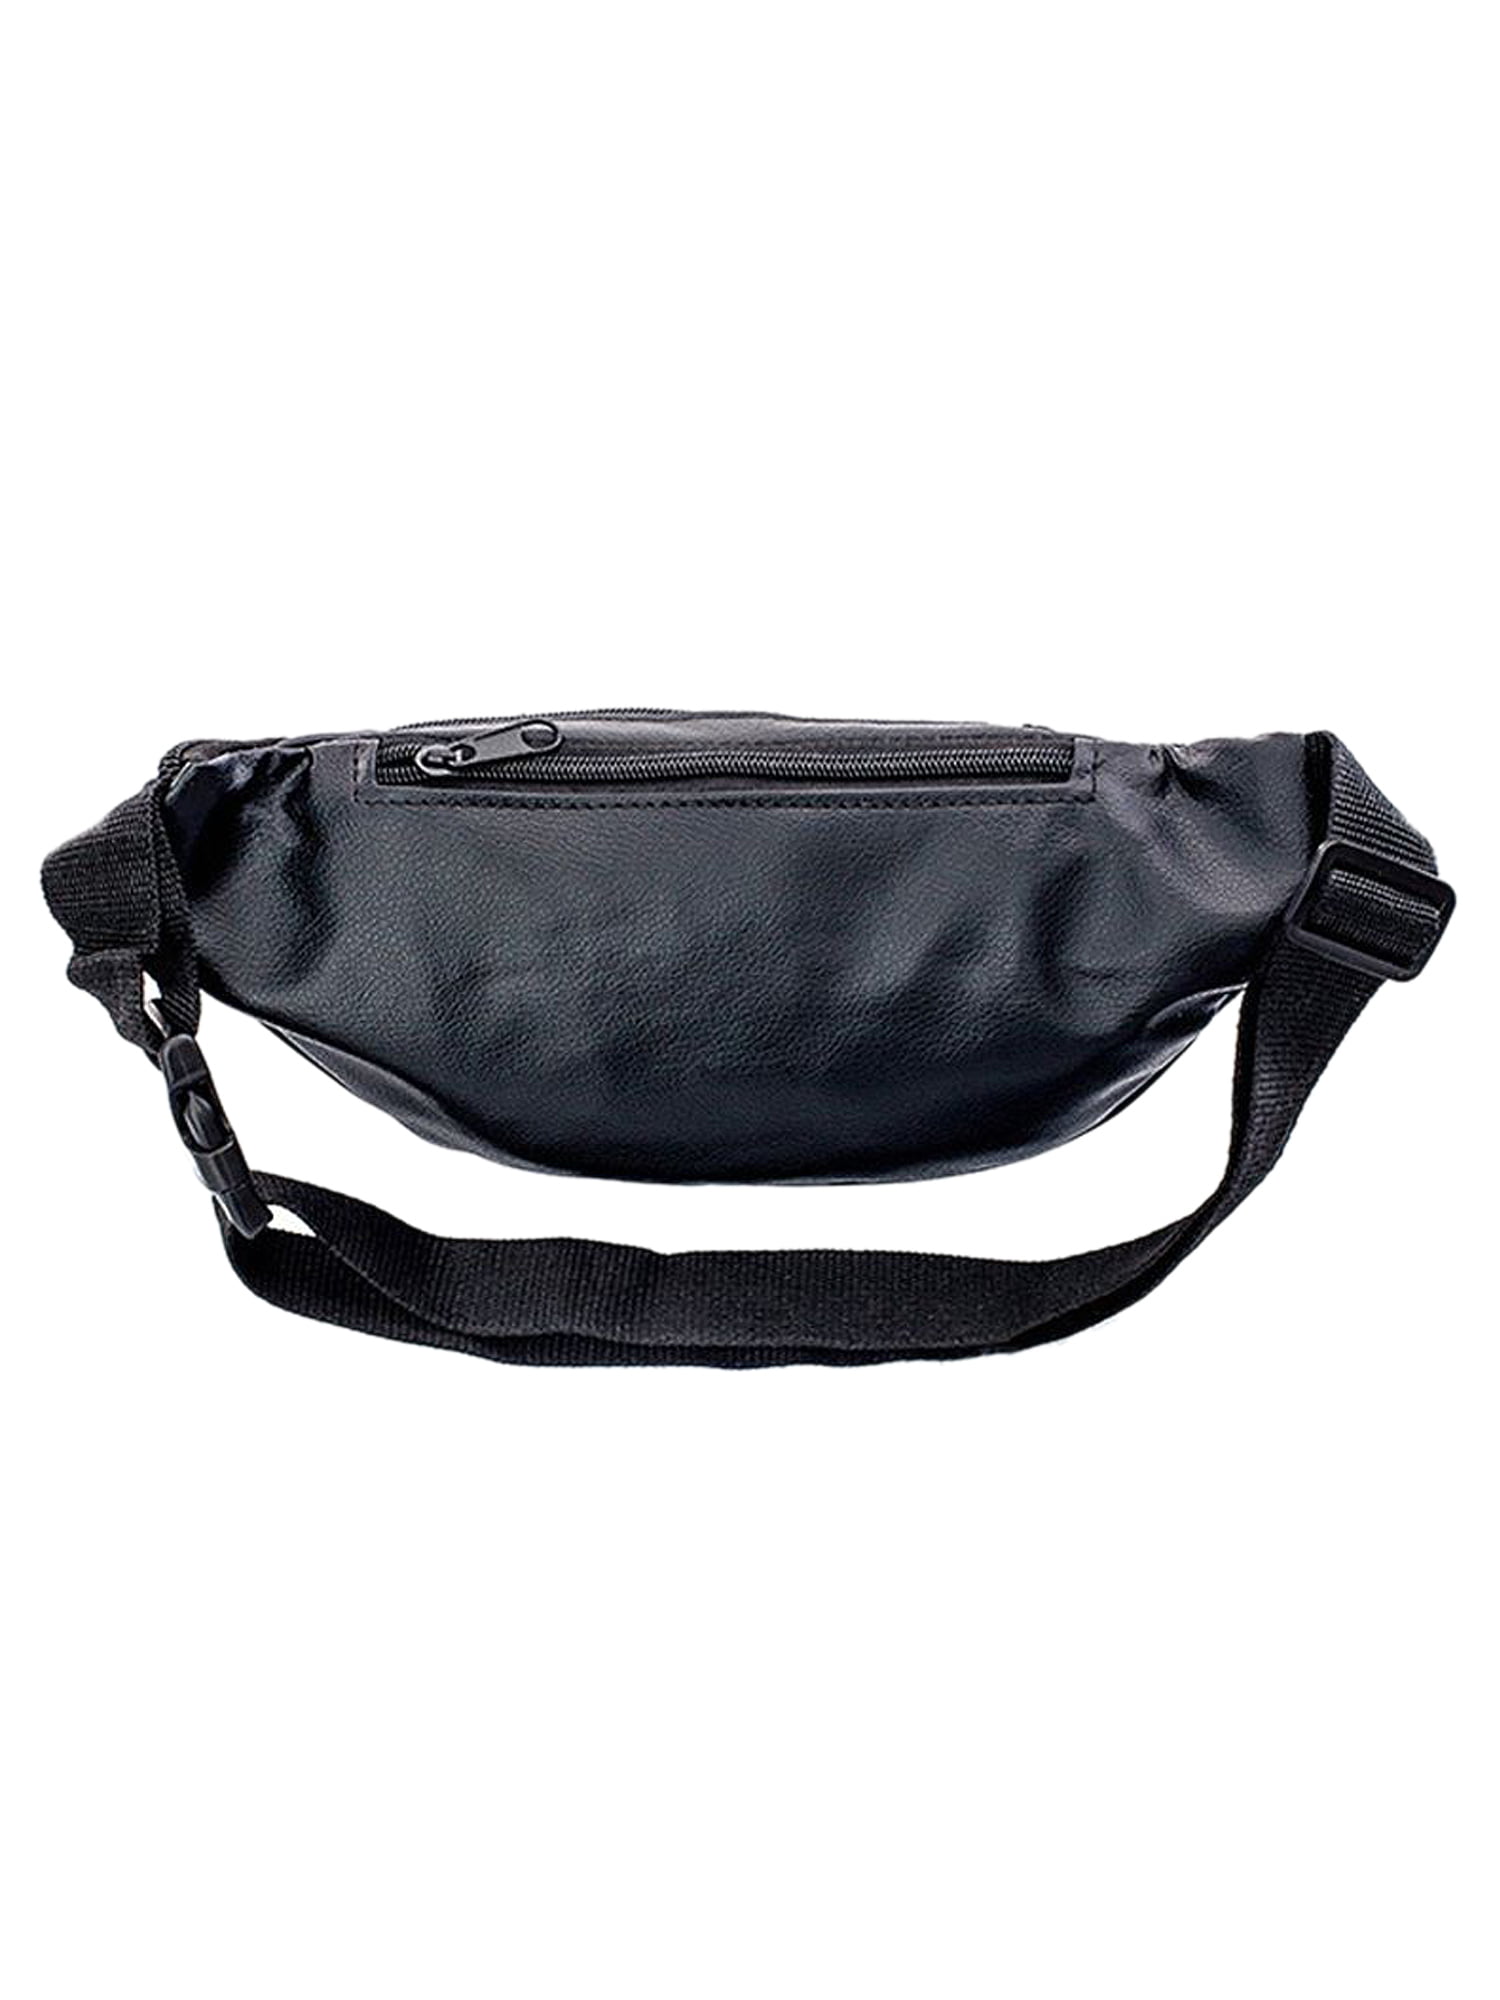 Paddsun Fanny Pack for Waist Bag Men Women Hip Belt Pouch Pocket Travel Sport Waterproof, Men's, Size: Waist Bag Main Pouch 8.2 x 5.9 Inches (LXH)